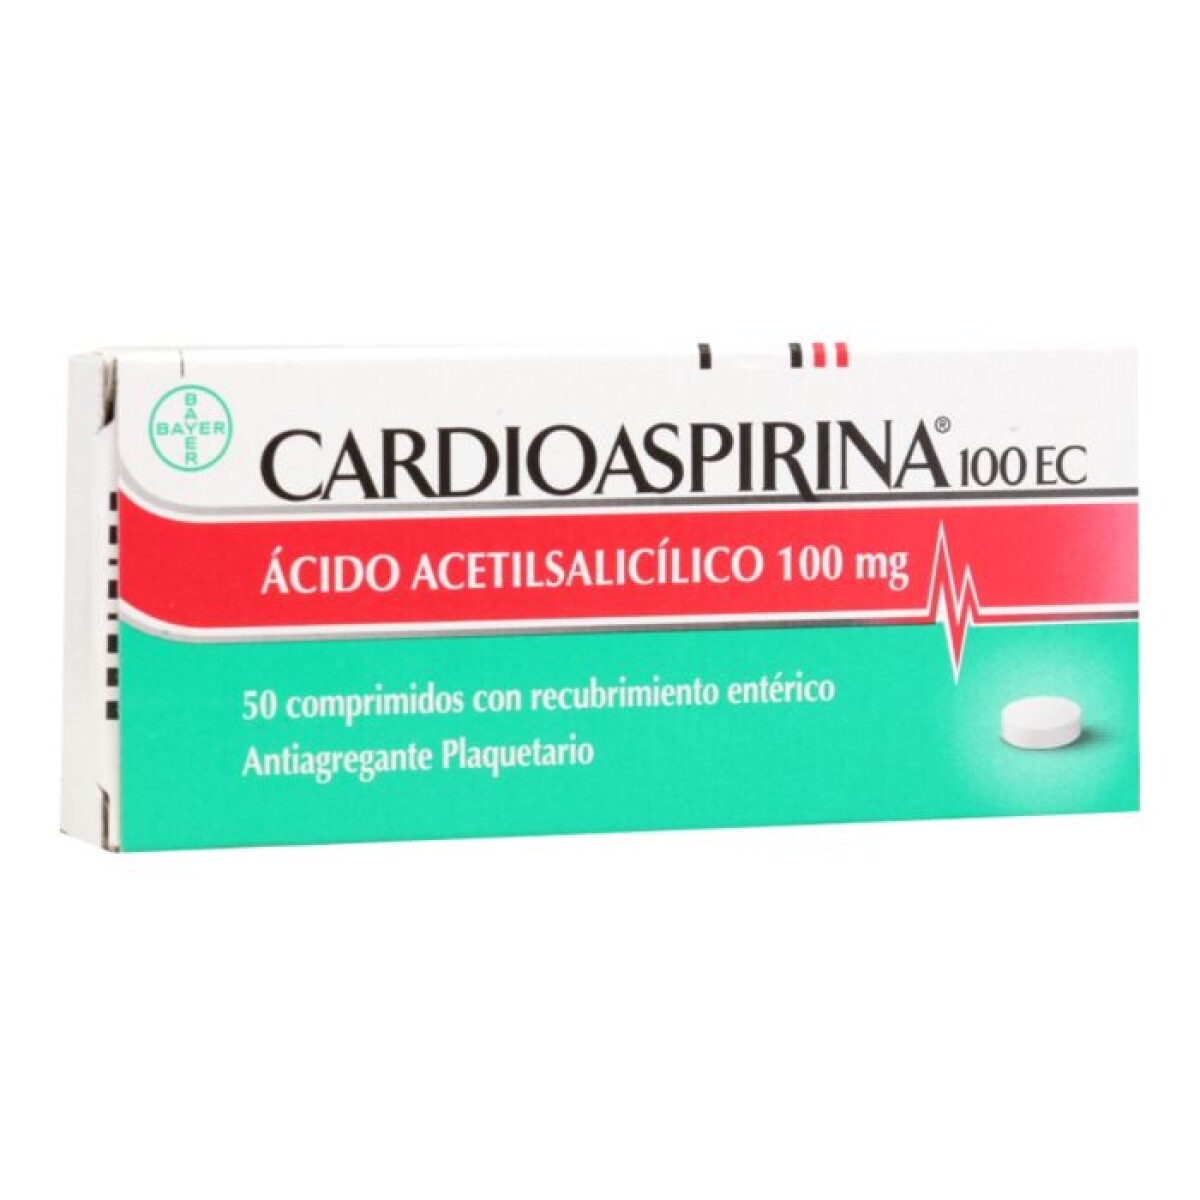 Cardioaspirina 100 EC 50 Comprimidos 